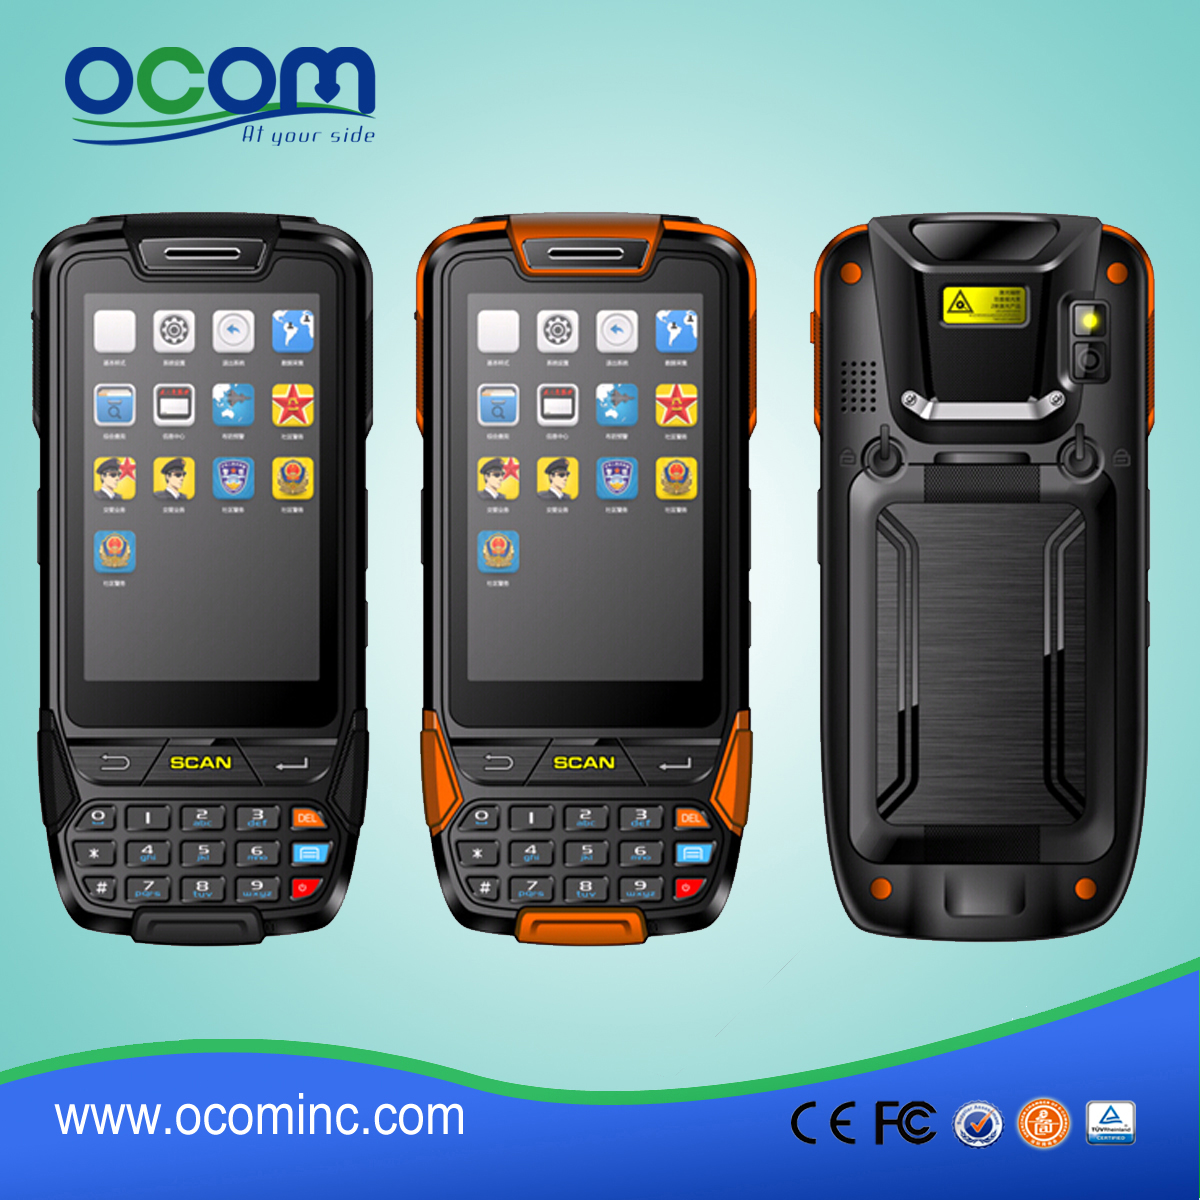 Android Raccolta dati PDA Made in China, multi funzioni per l'opzione OCB-D8000